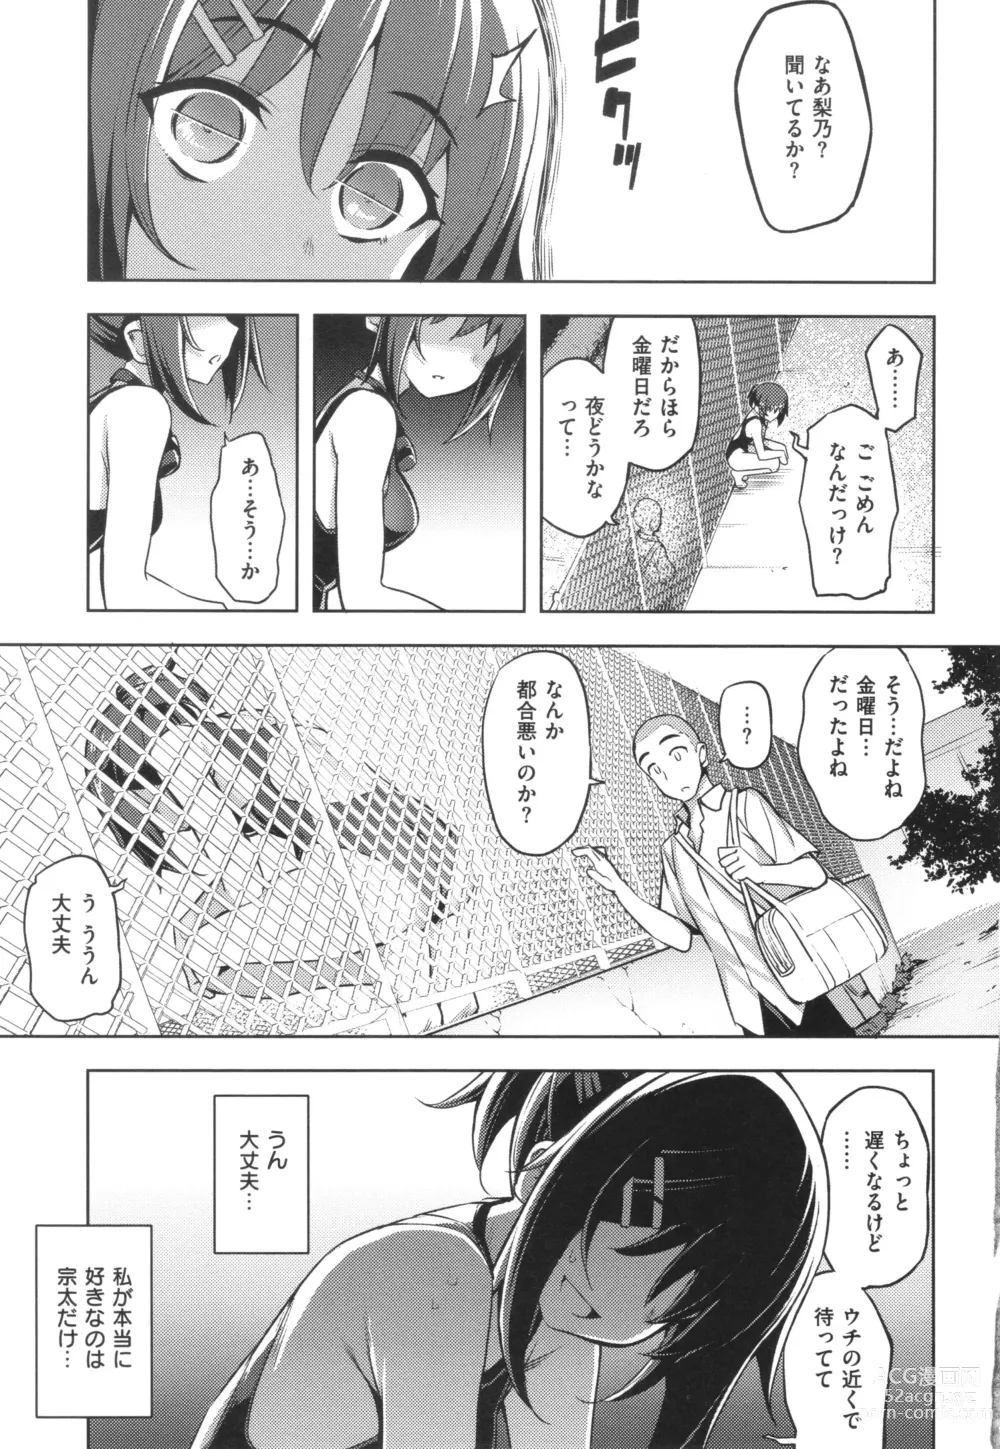 Page 198 of manga Hanashi ga Chigau ♥